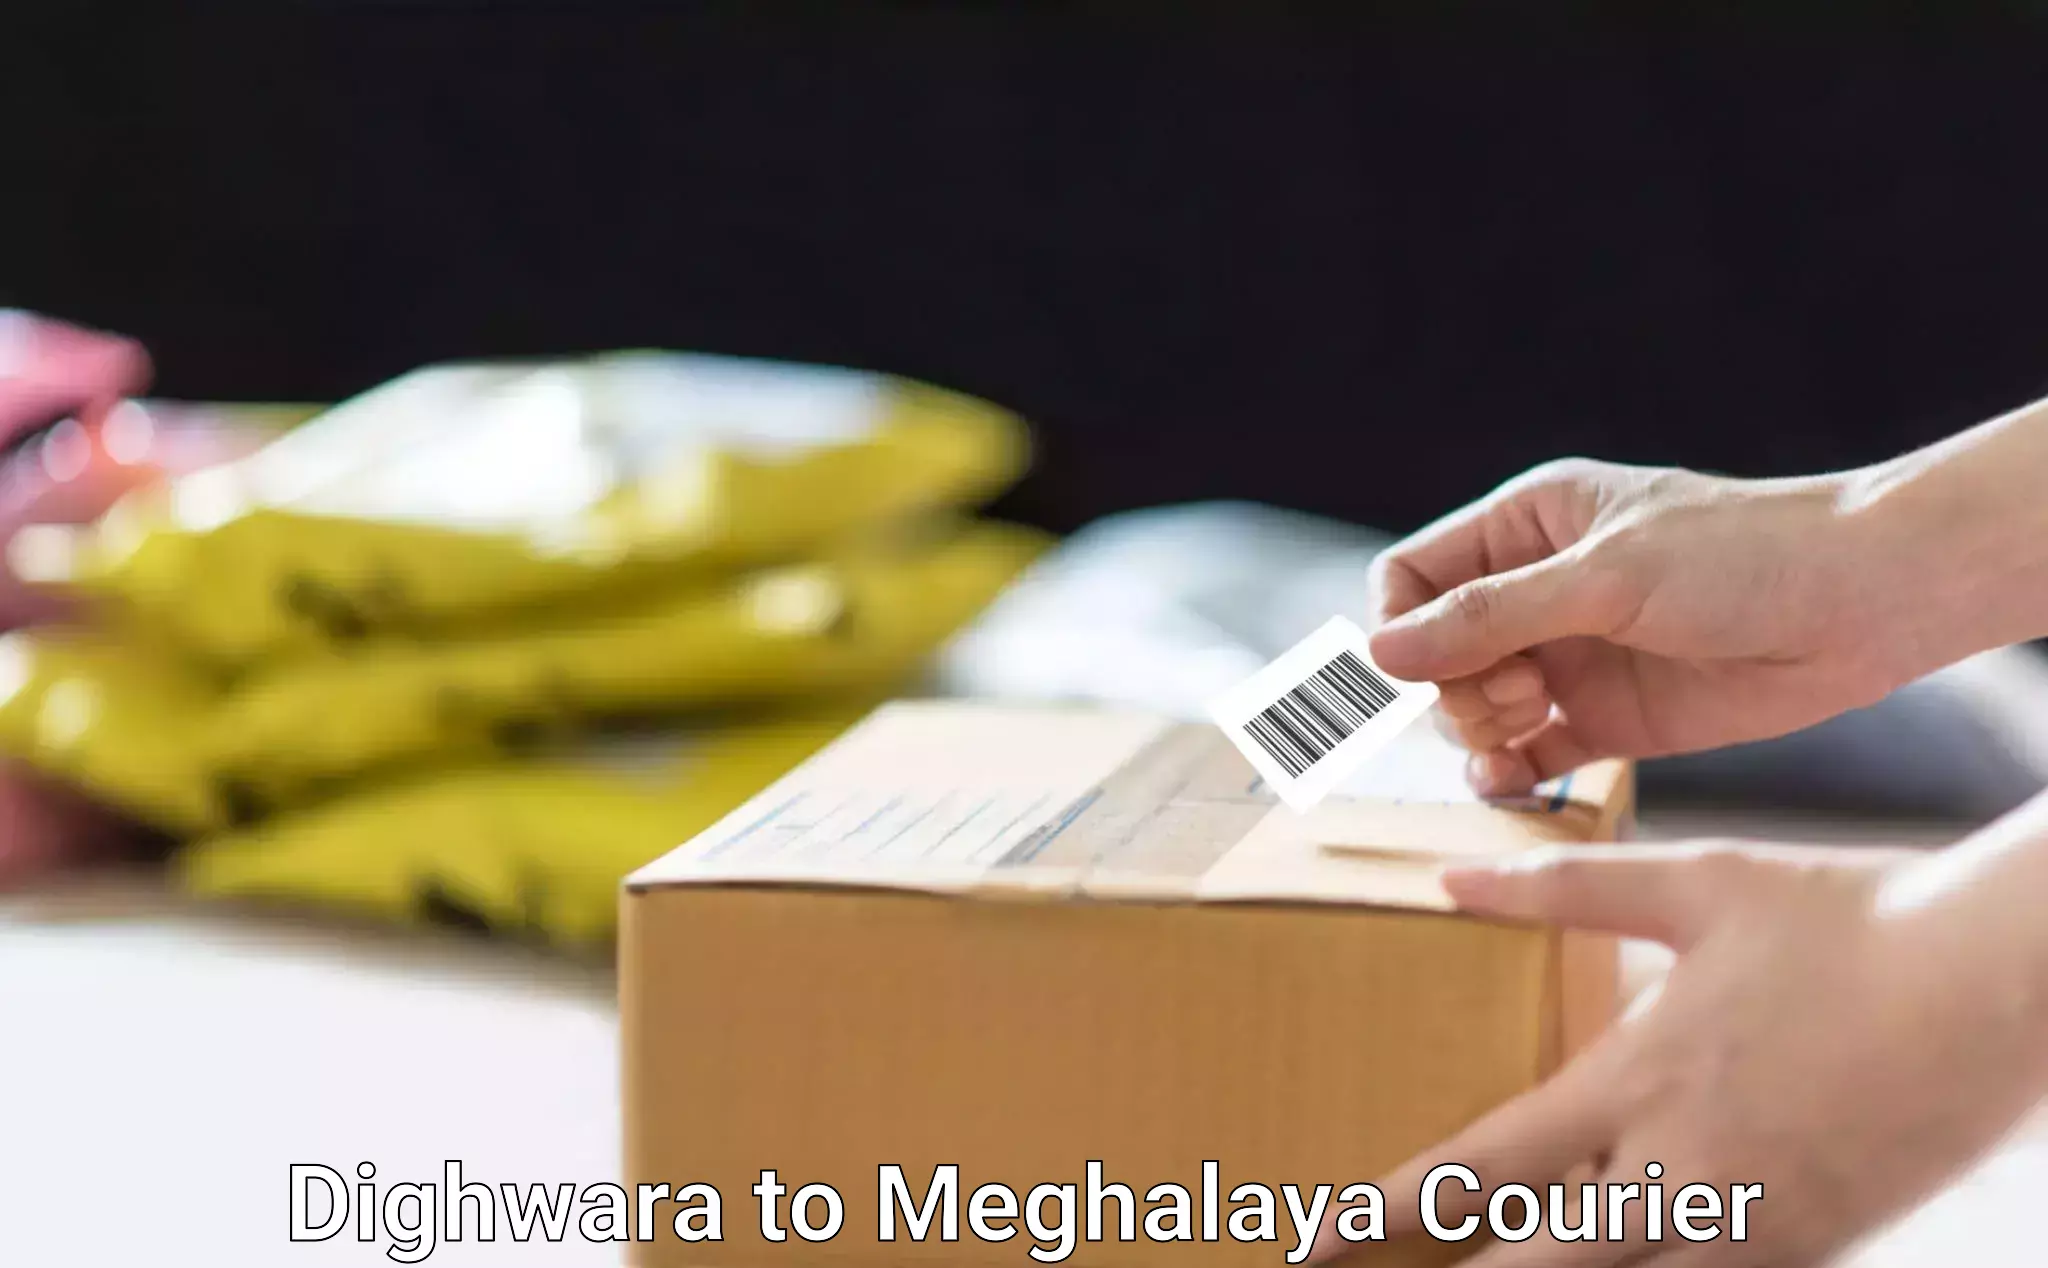 Full-service furniture transport Dighwara to Meghalaya